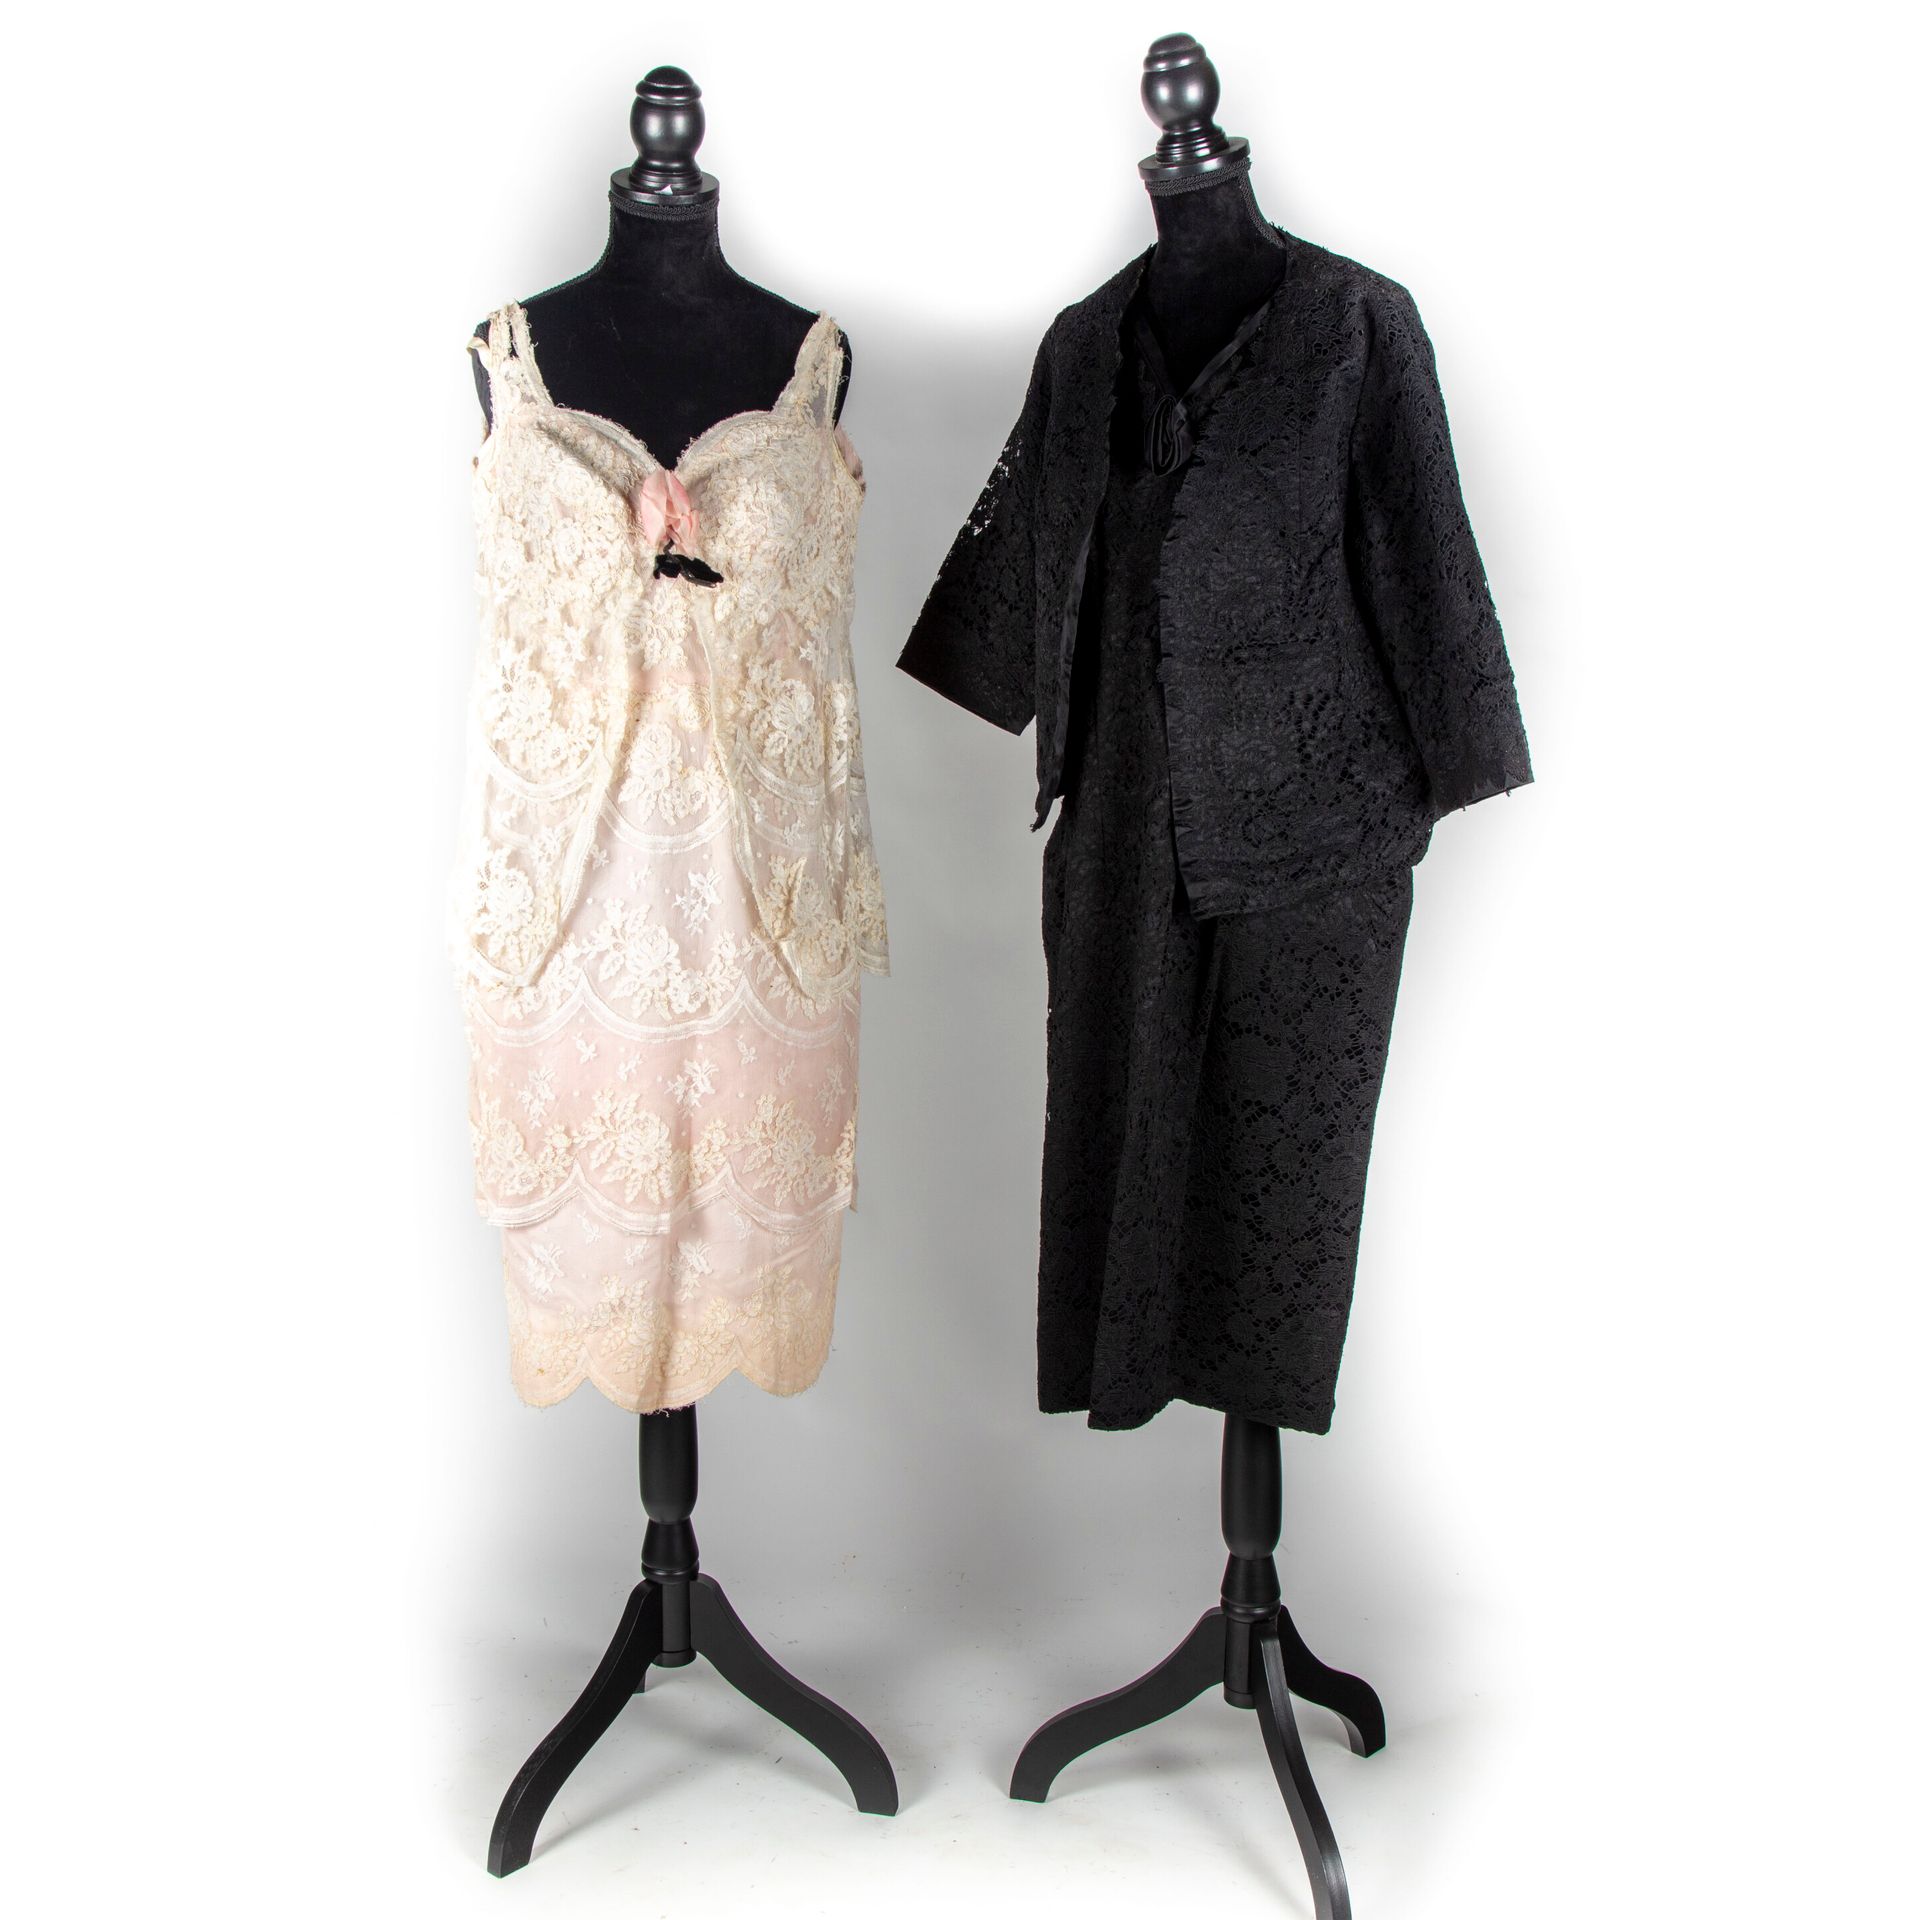 Null OHNE GRIFFE - circa 1950/60

2 Kleider : 

Cocktailkleid und kurze Jacke au&hellip;